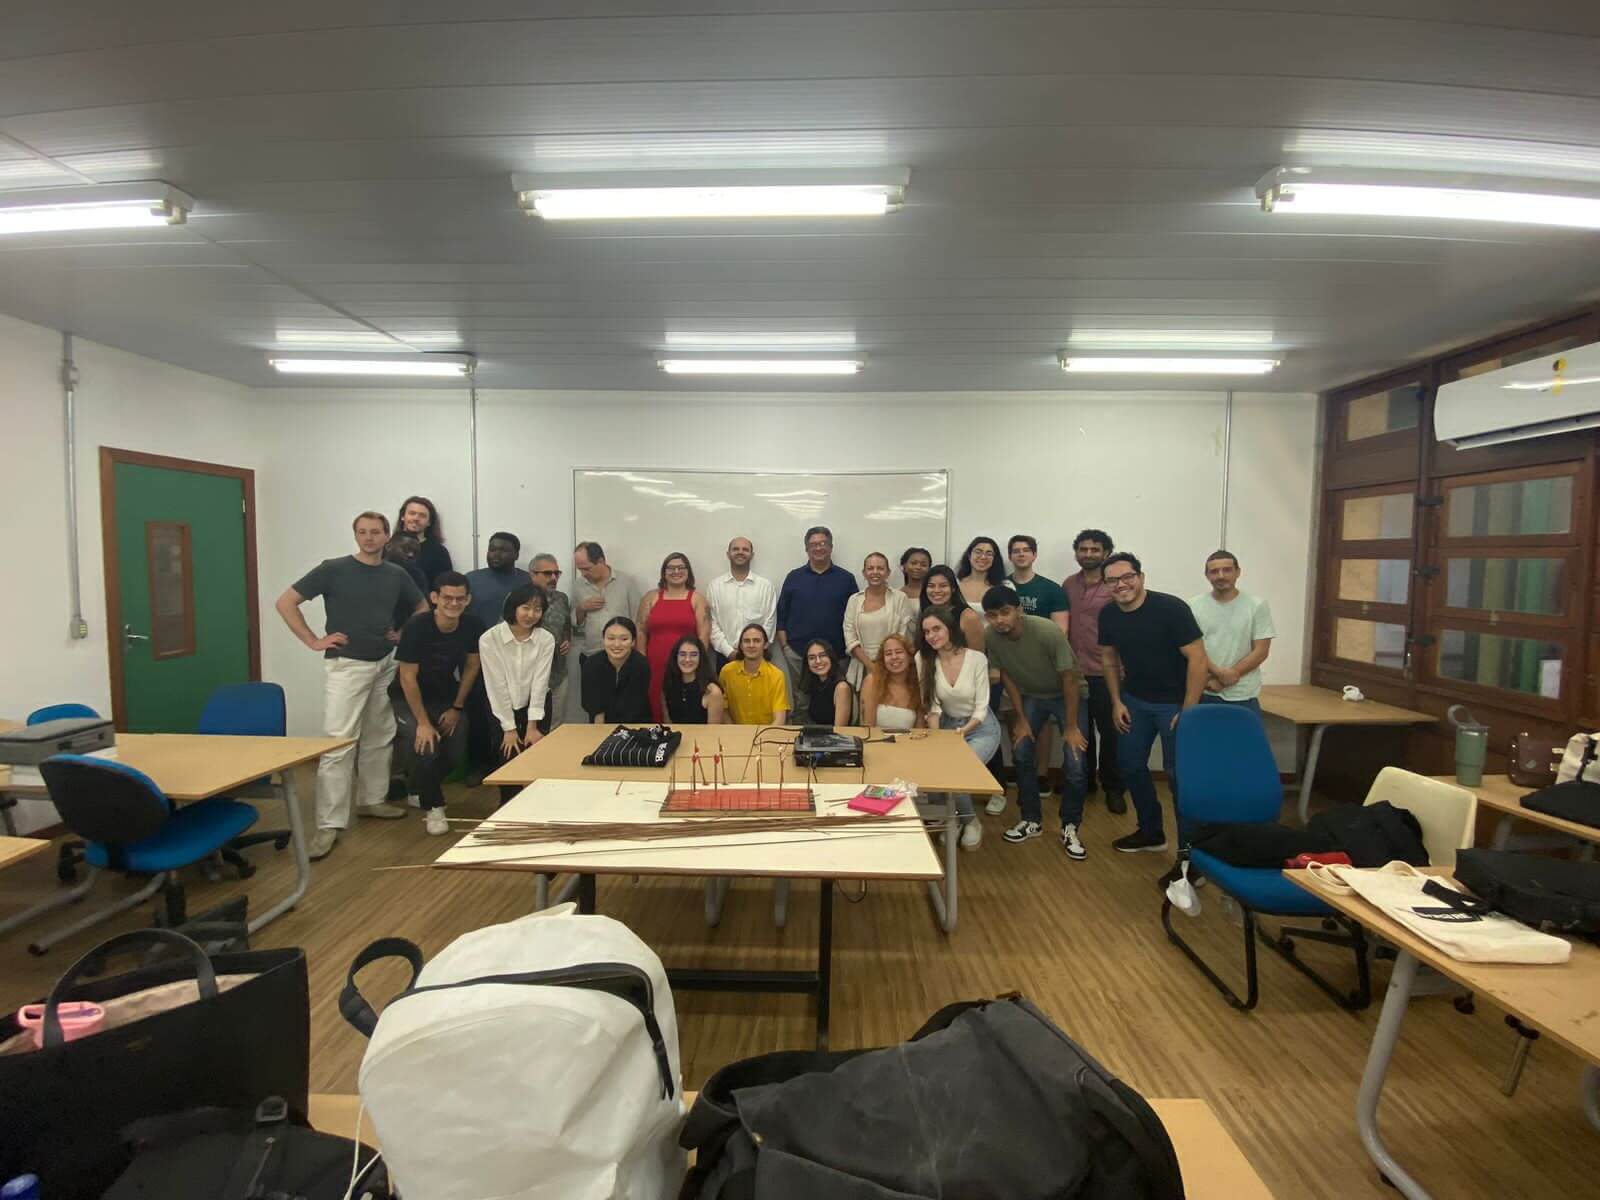 Projeto ‘Nosso Centro’ da Prefeitura de Manaus é destaque em encontro com universitários do MIT, dos Estados Unidos